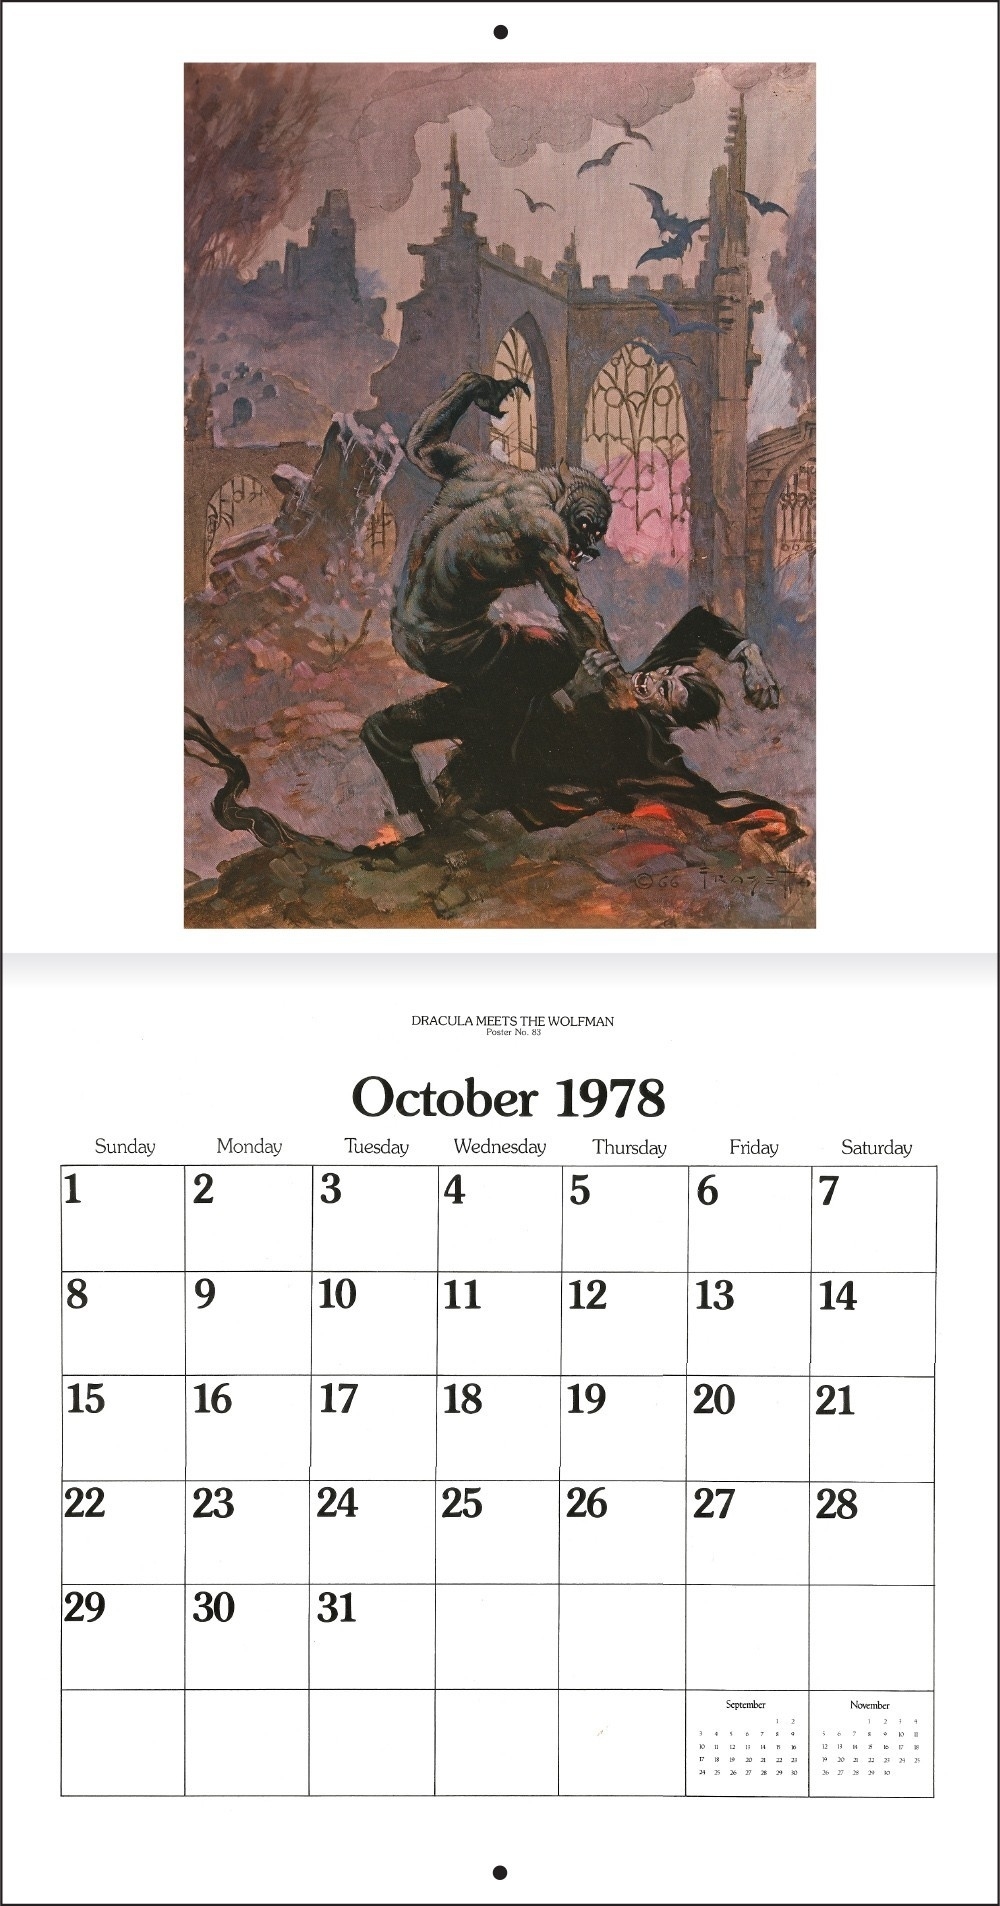 Frazetta Calendar 1979 October 15 July 1979 Calendar 20 July 1979 Calendar Month July 1979